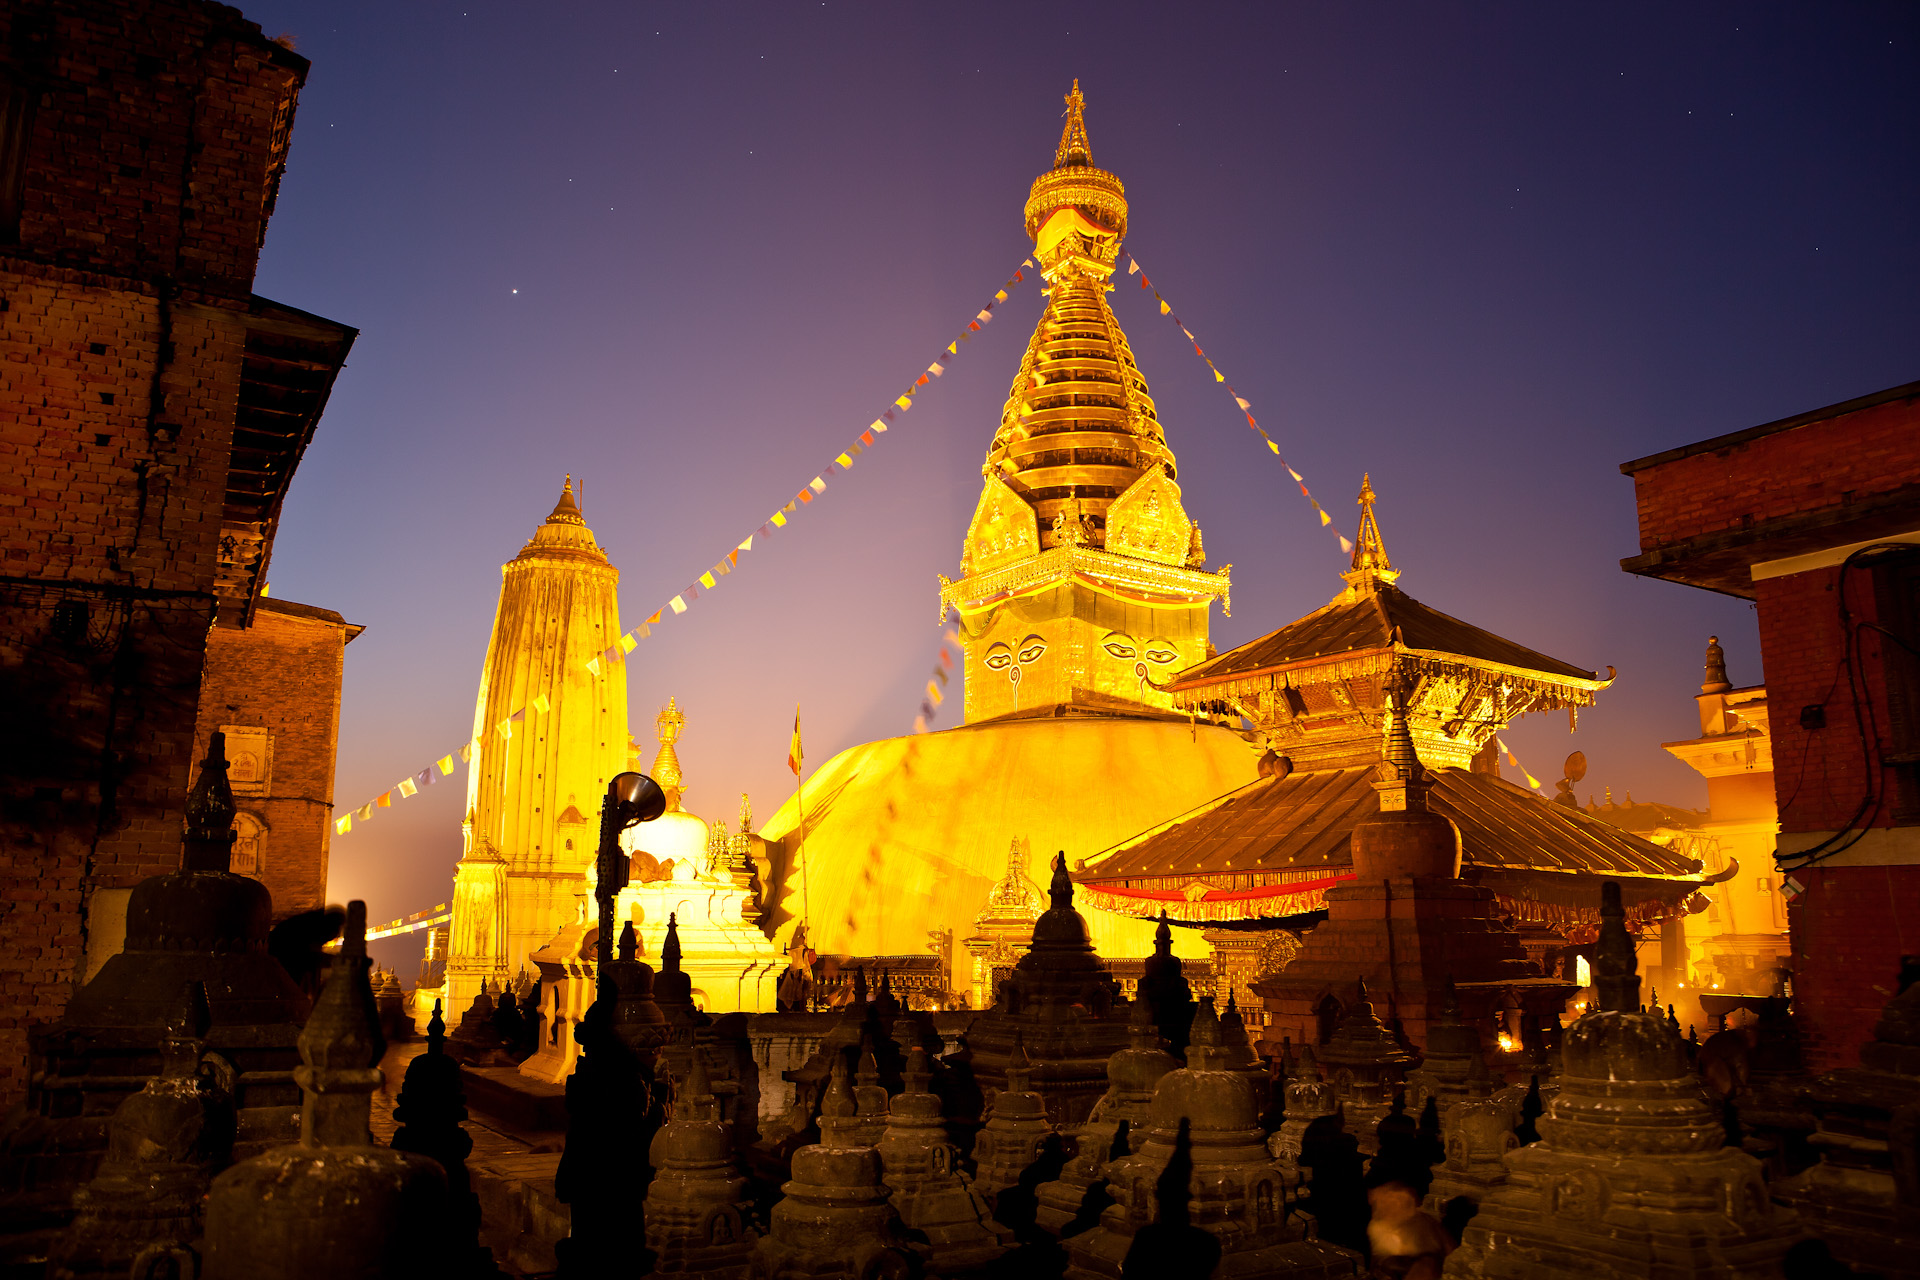 Nepal-Kathmandu-Travel-Swayambhunath-Buddhism-Temple-Night-Jason-Bax.JPG